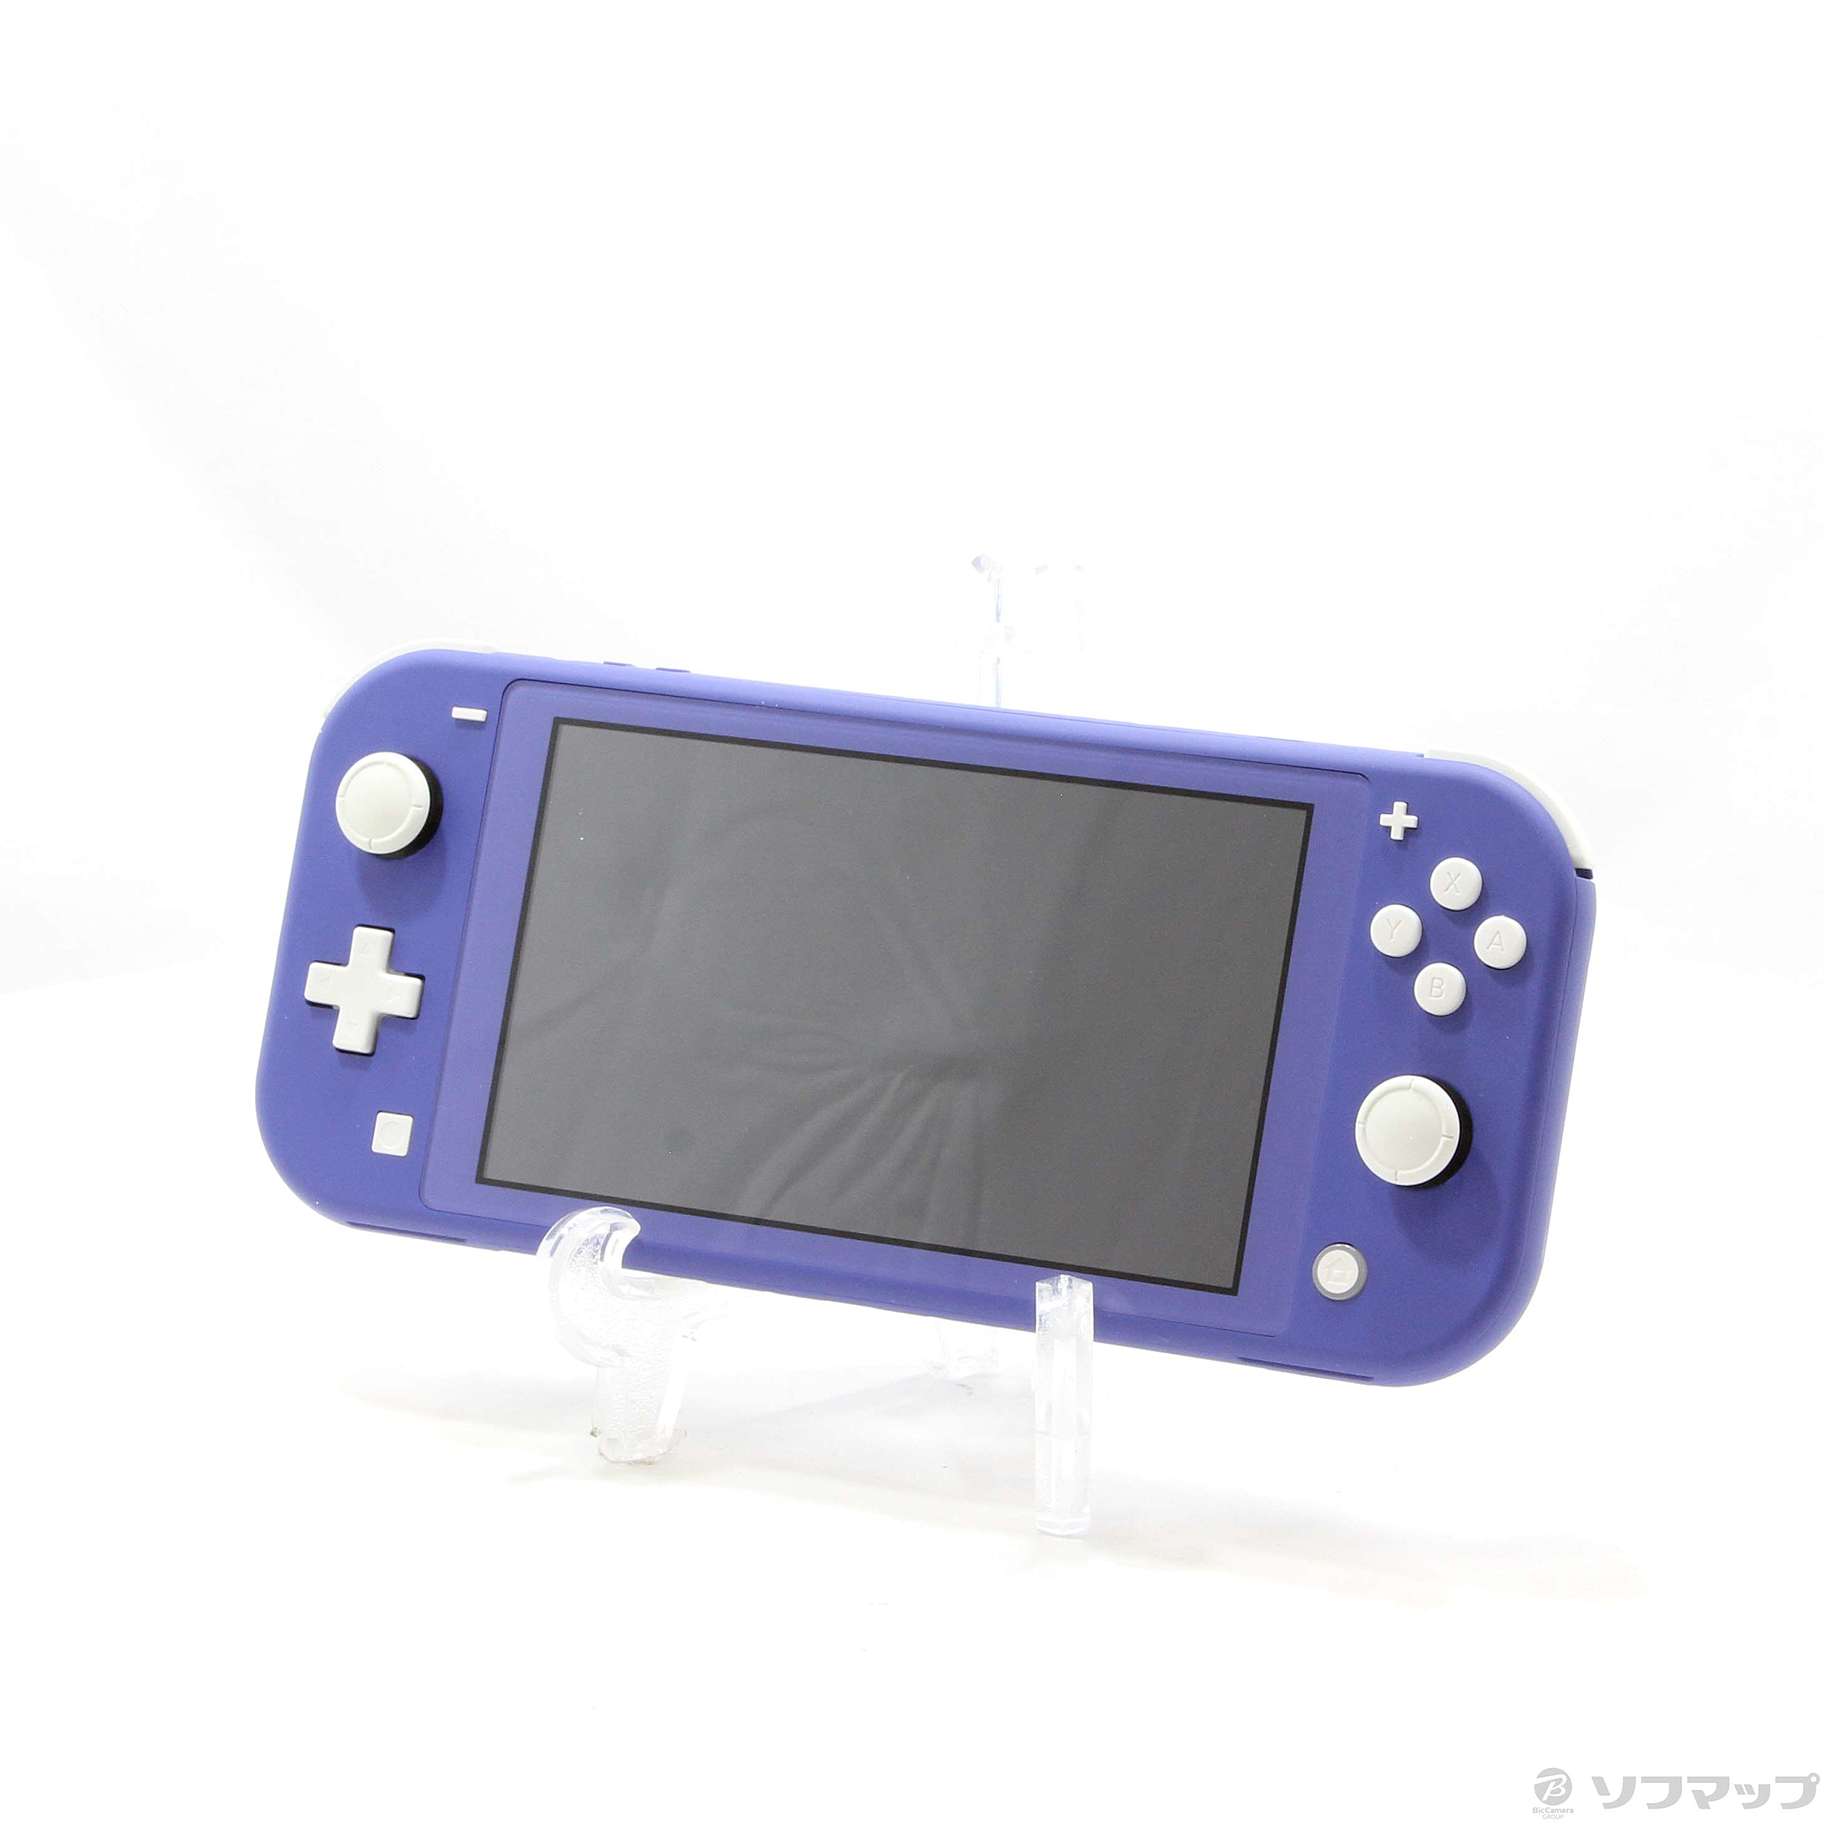 中古】セール対象品 Nintendo Switch Lite ブルー ◇07/01(金)値下げ ...